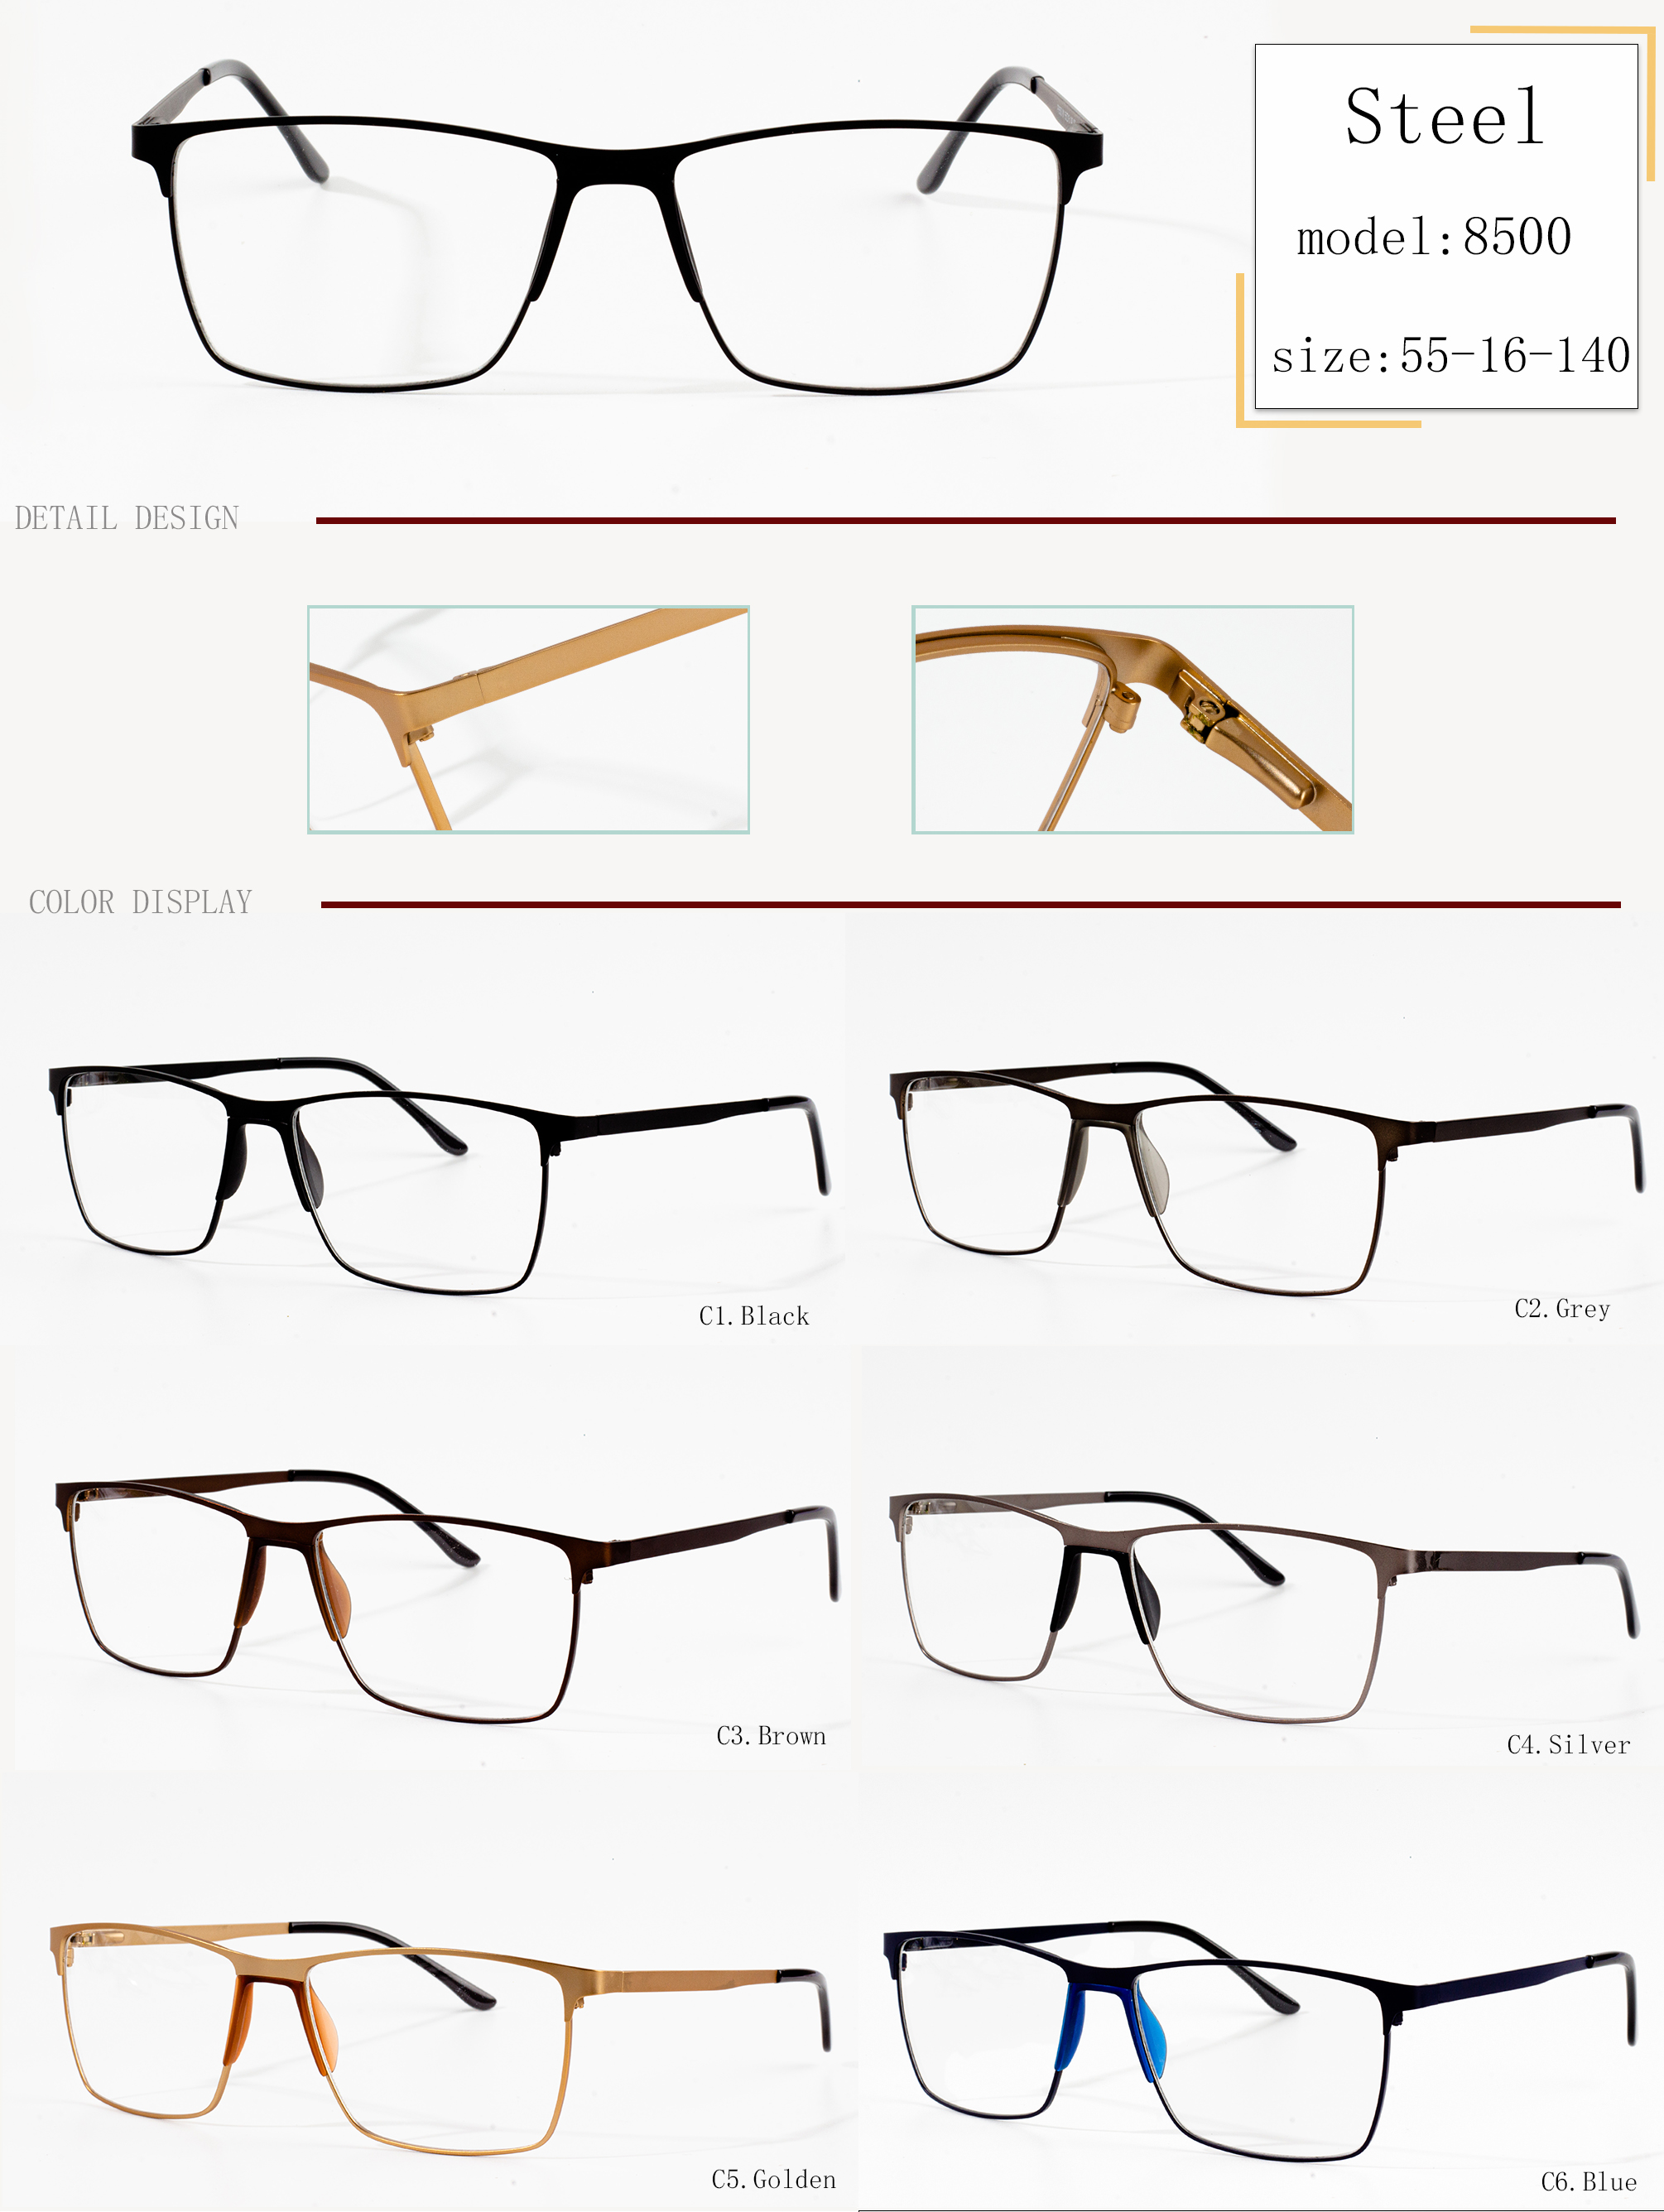 bingkai untuk kacamata